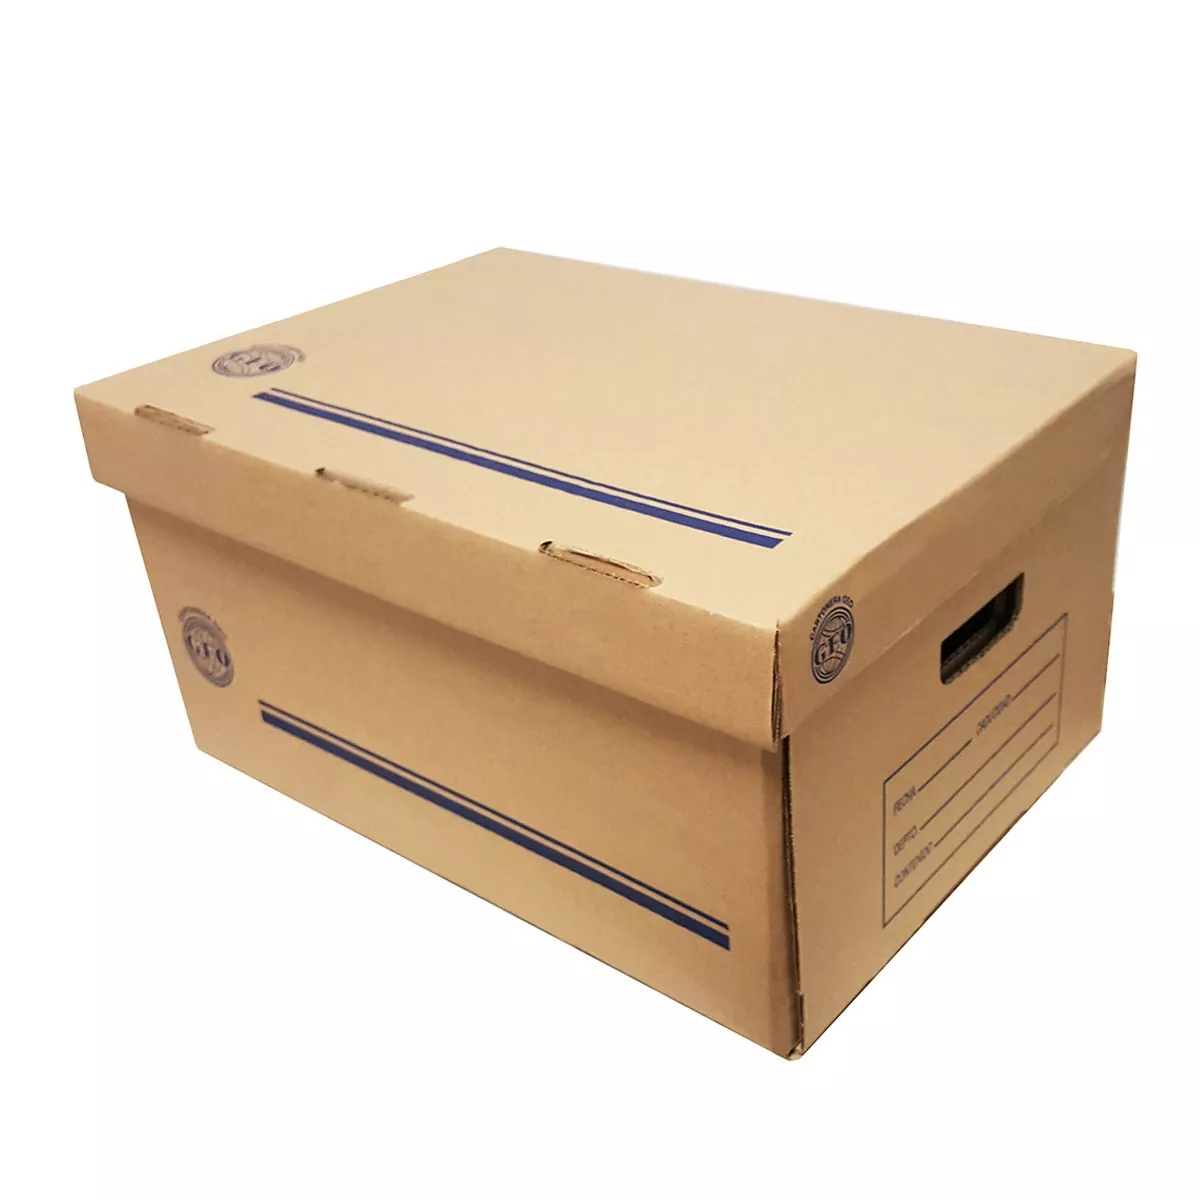 Caja de archivo GEO kraft para registrad Medida: 50 x 31 x 29 cm, cartón corrugado sencillo kraft, corte sobre suaje, 100% reciclado nacional, calibre de 3 mm, resistencia de 11 kg/cm, flauta tipo C.                                                                                                  or carta                                 - 1000005